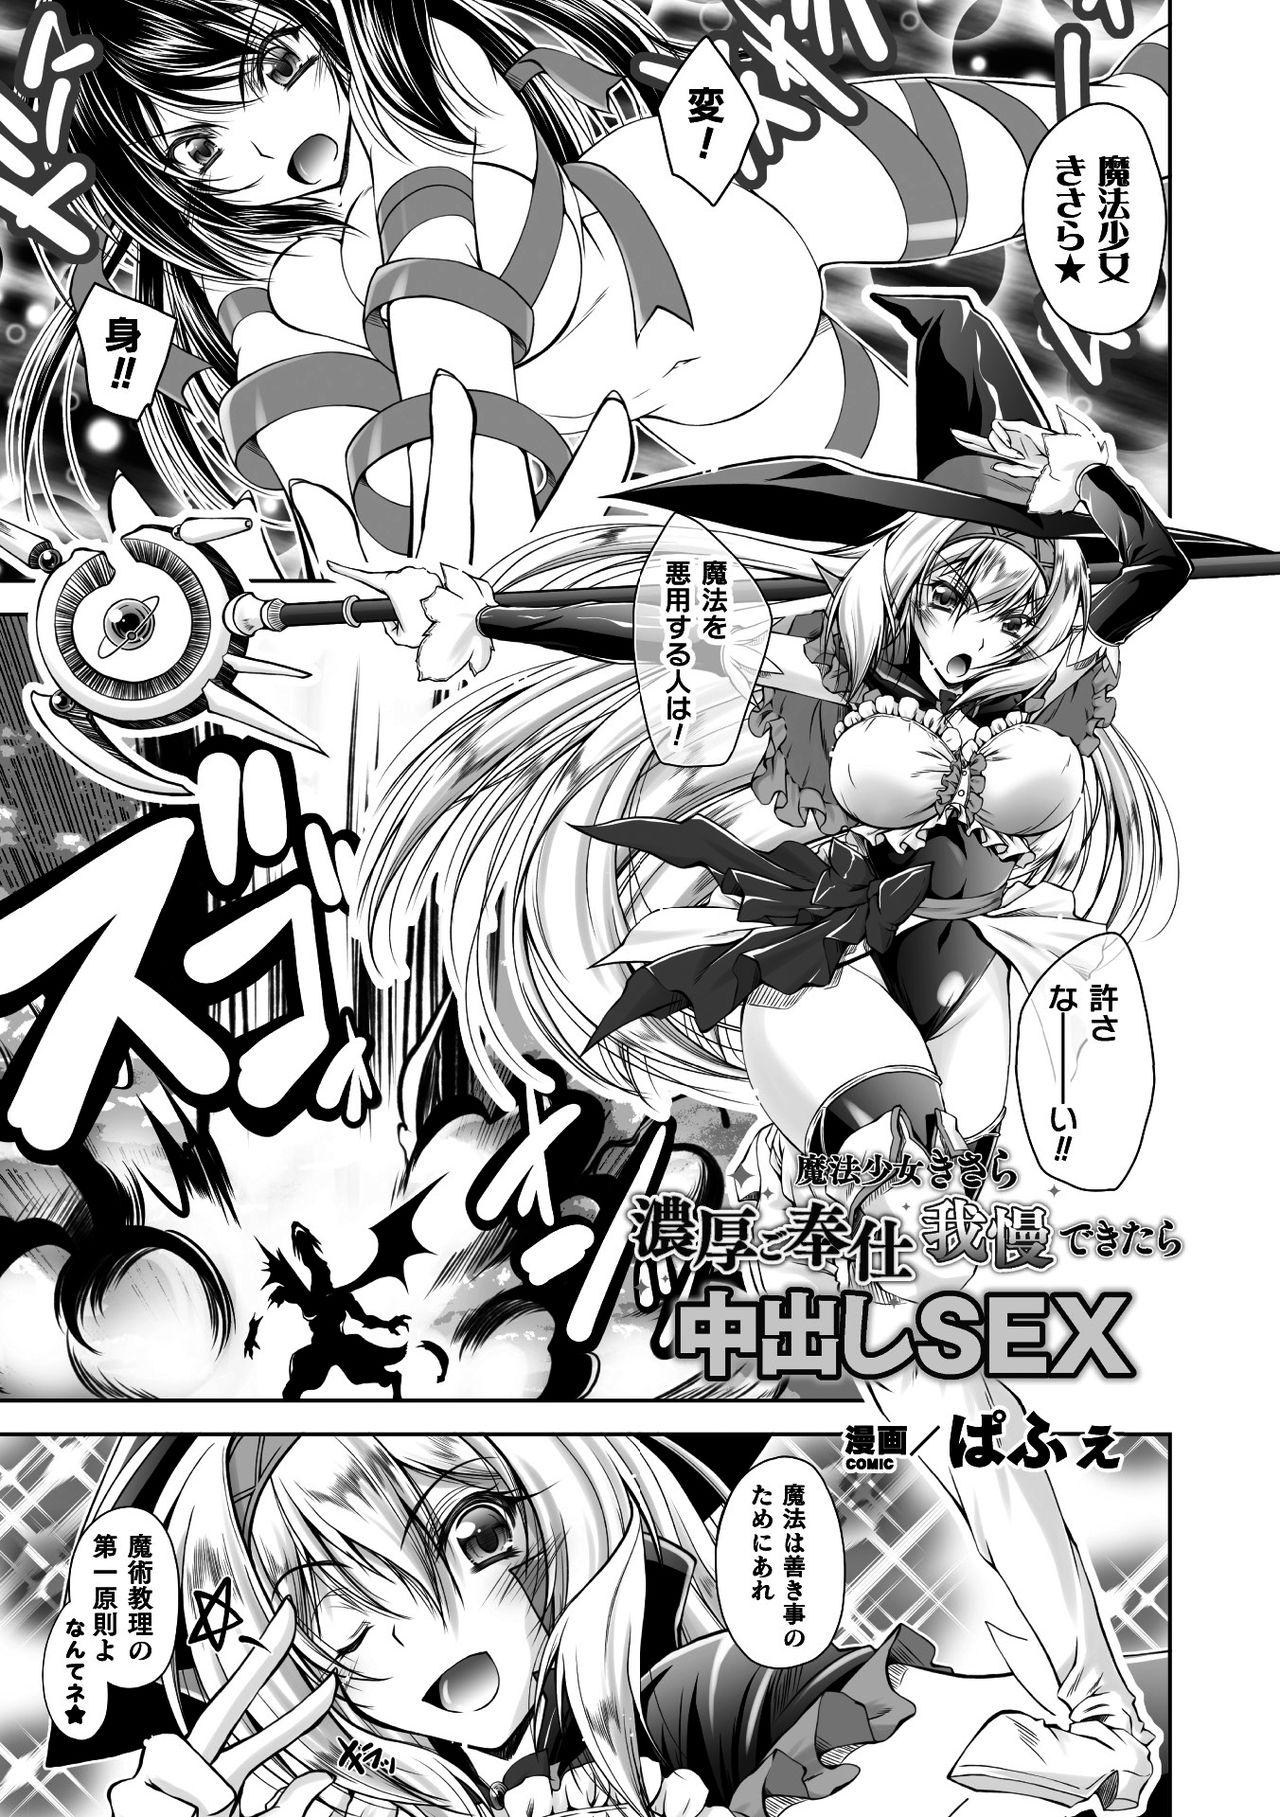 2D Comic Magazine Henshin Heroine Pakopako AV Debut Vol. 1 2